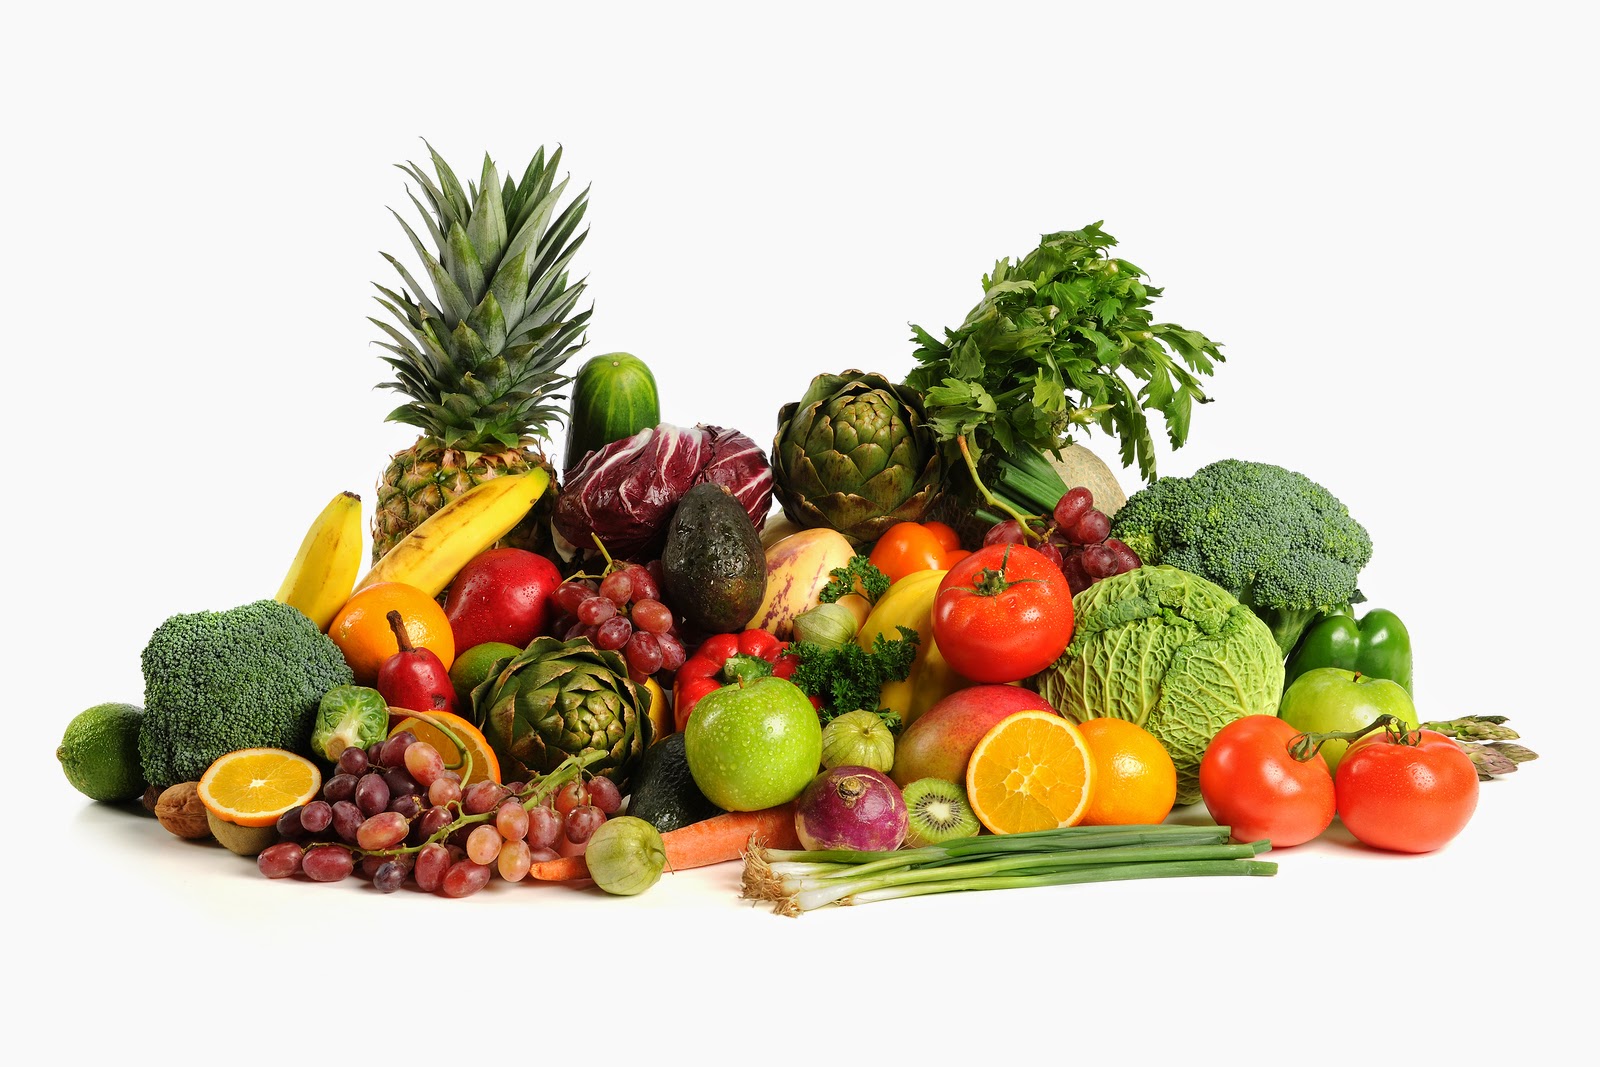  اتباع نظام غني بالفواكه والخضروات يساعد على تخفيض ضغط الدم